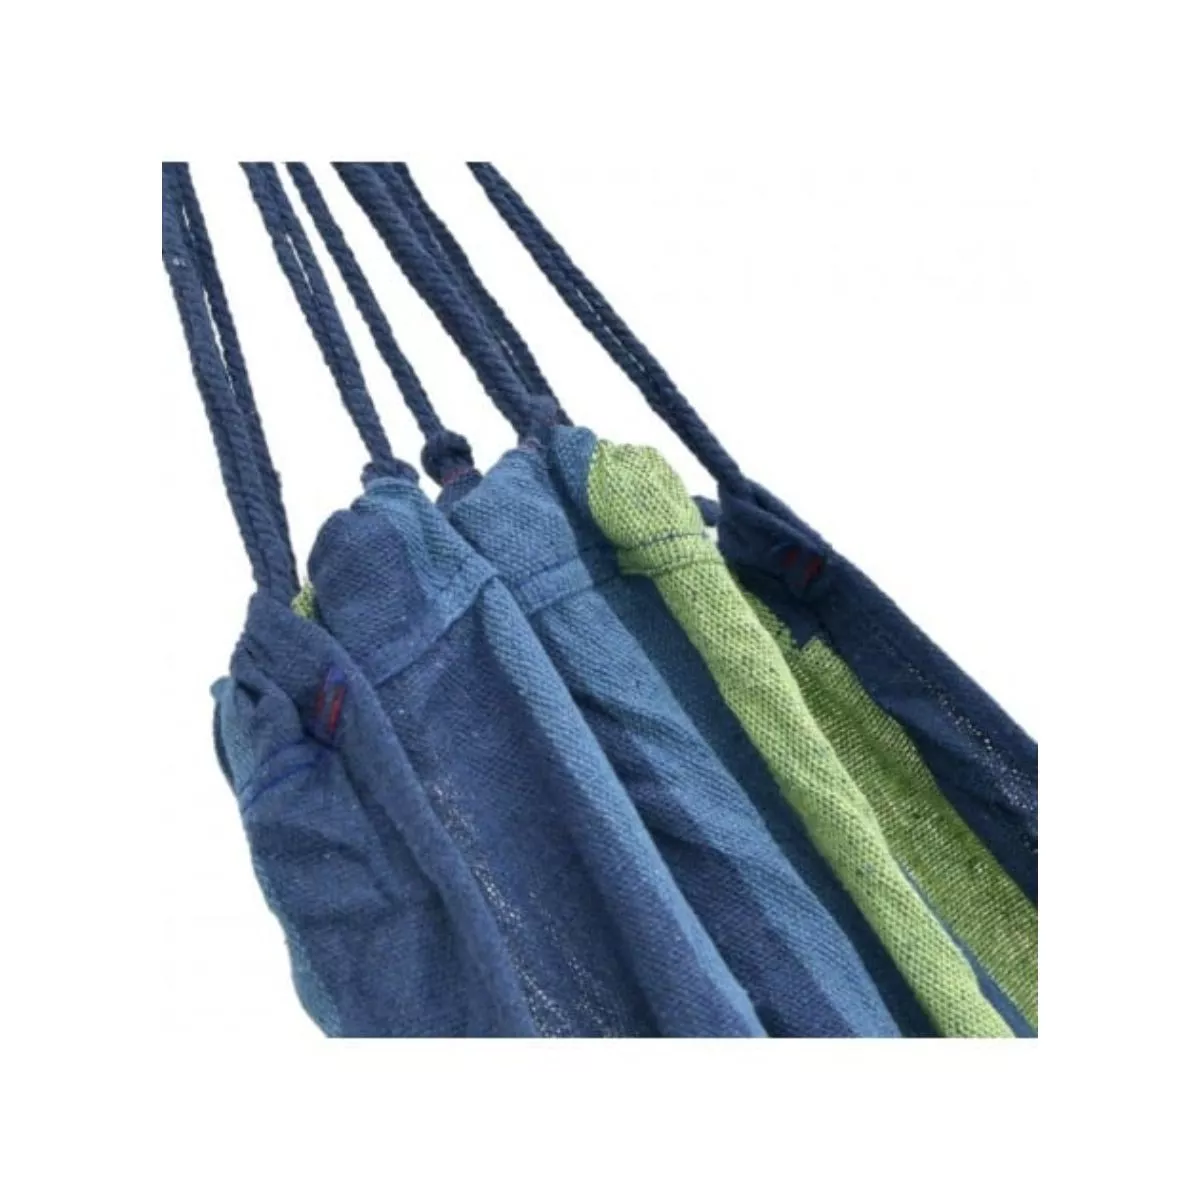 Hamac textil albastru cu verde 200x100 3